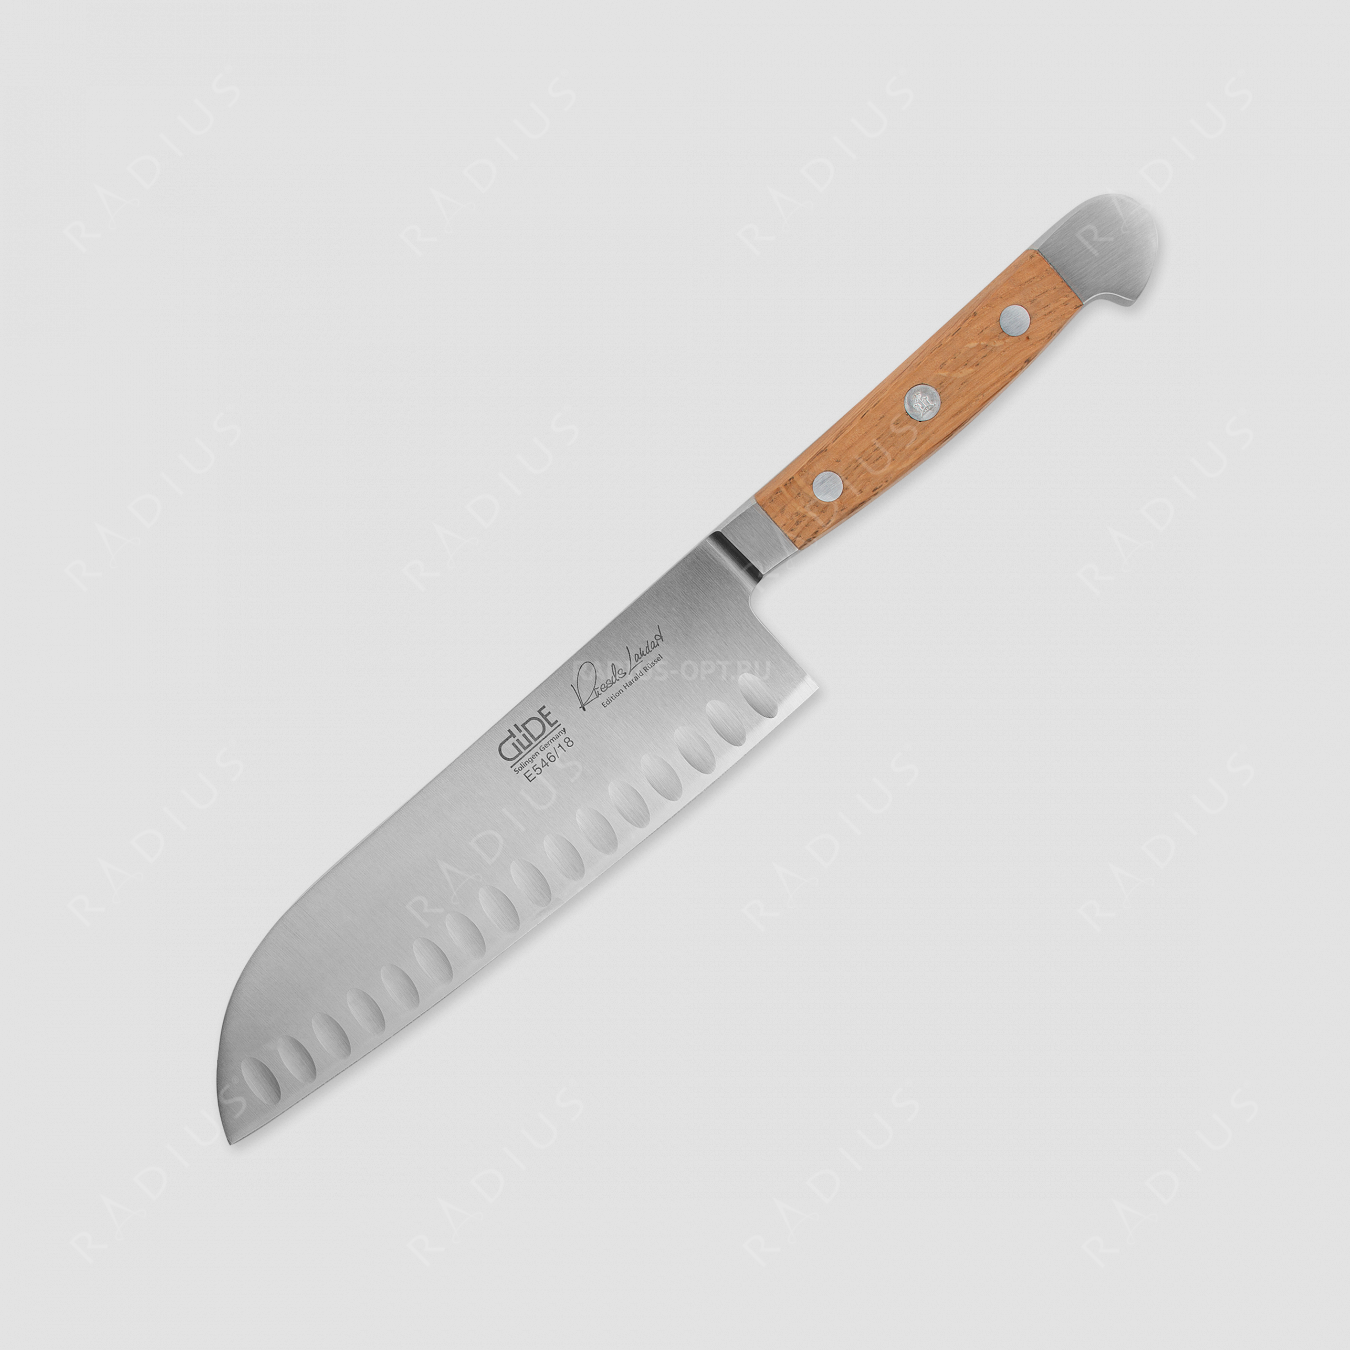 Профессиональный поварской кухонный нож японский «Шеф» 18 см, ручка из дуба, серия Alpha Fasseiche, GUDE, Золинген, Германия